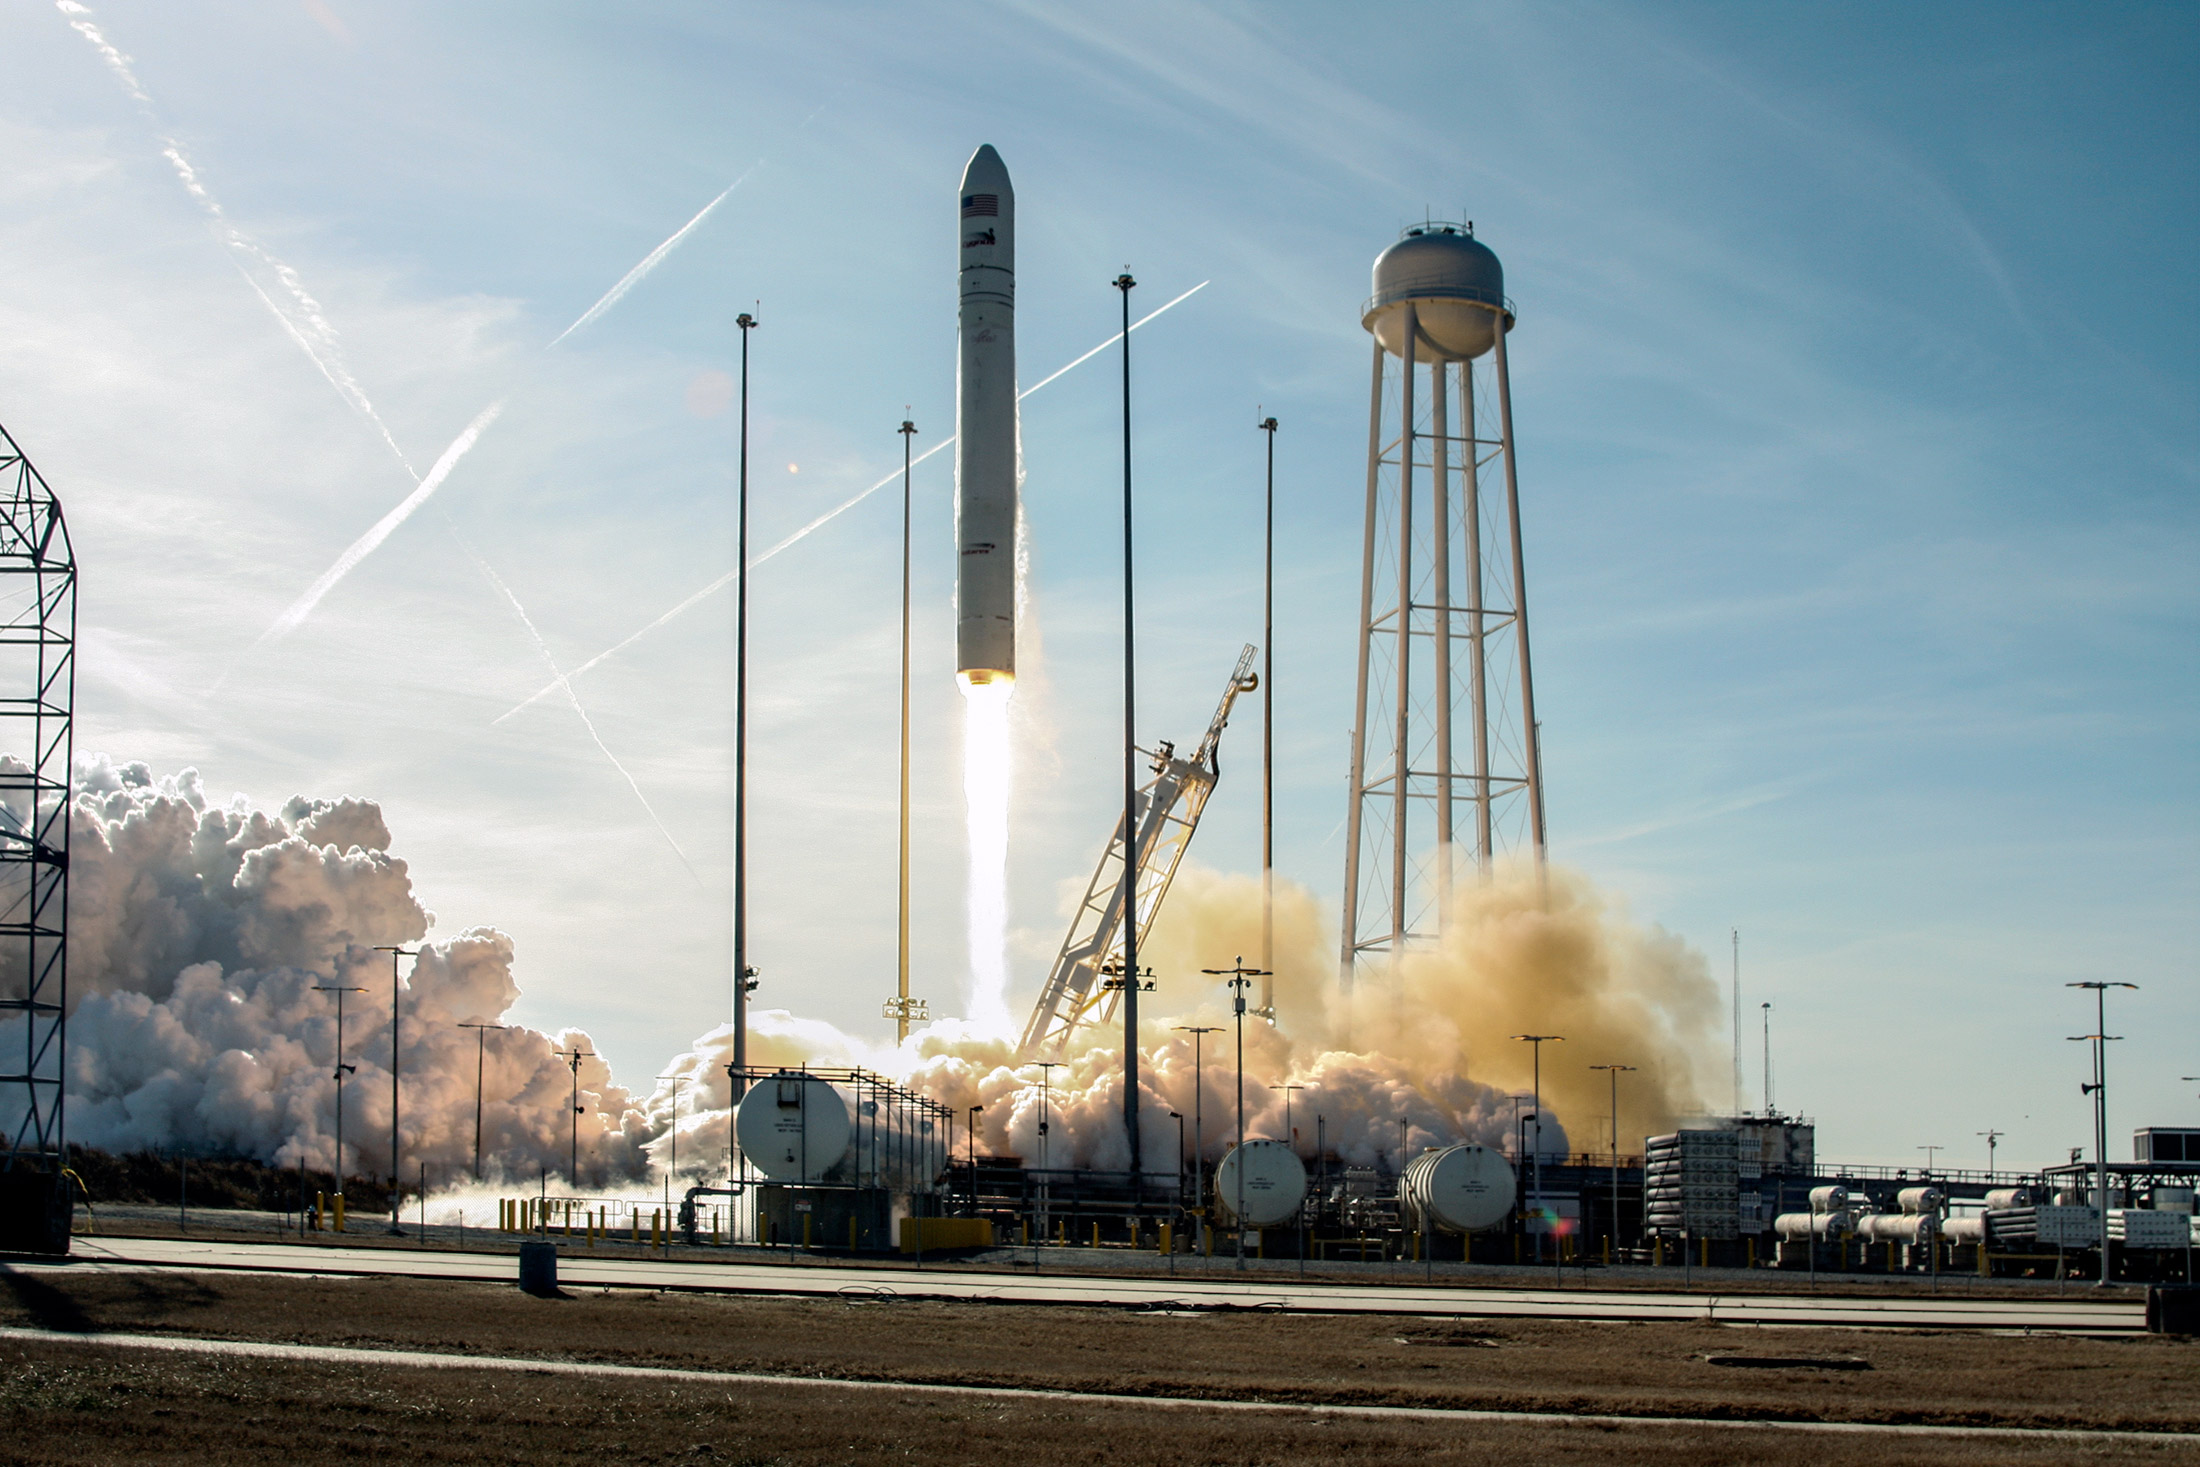 Troisième mission réussie pour le lanceur Antares. Après deux vols de qualification, dont un avec un cargo Cygnus lancé à destination de l'ISS, cette mission marque le début de l'activité commerciale pour ce système de lancement privé. © Bill Ingalls, Nasa